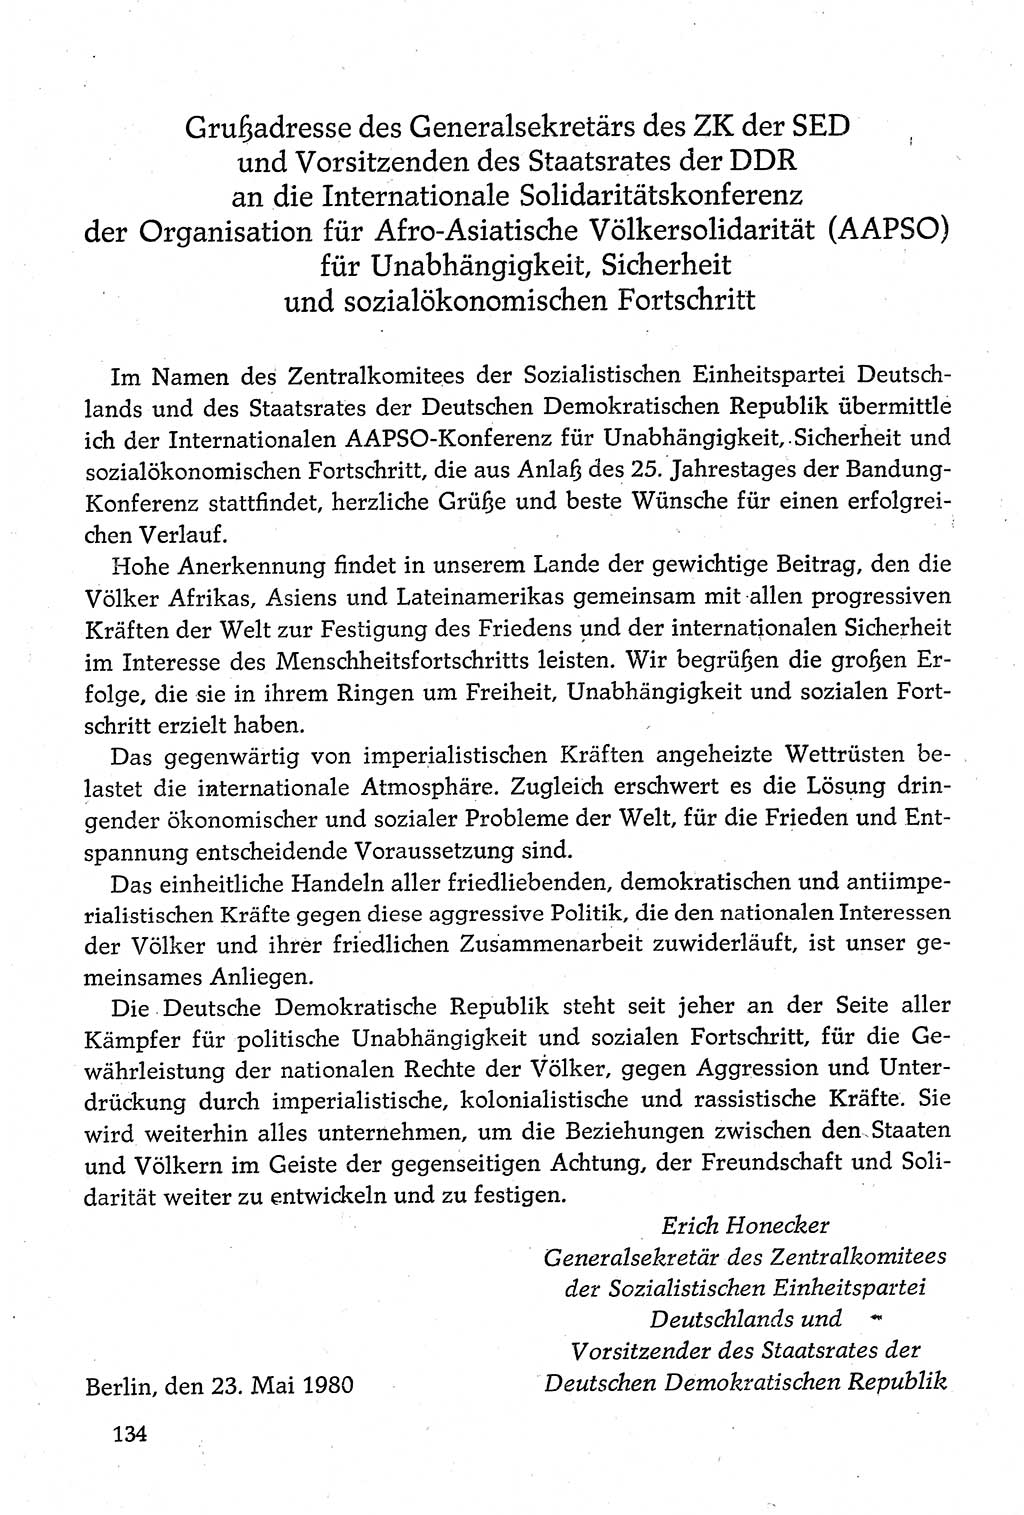 Dokumente der Sozialistischen Einheitspartei Deutschlands (SED) [Deutsche Demokratische Republik (DDR)] 1980-1981, Seite 134 (Dok. SED DDR 1980-1981, S. 134)